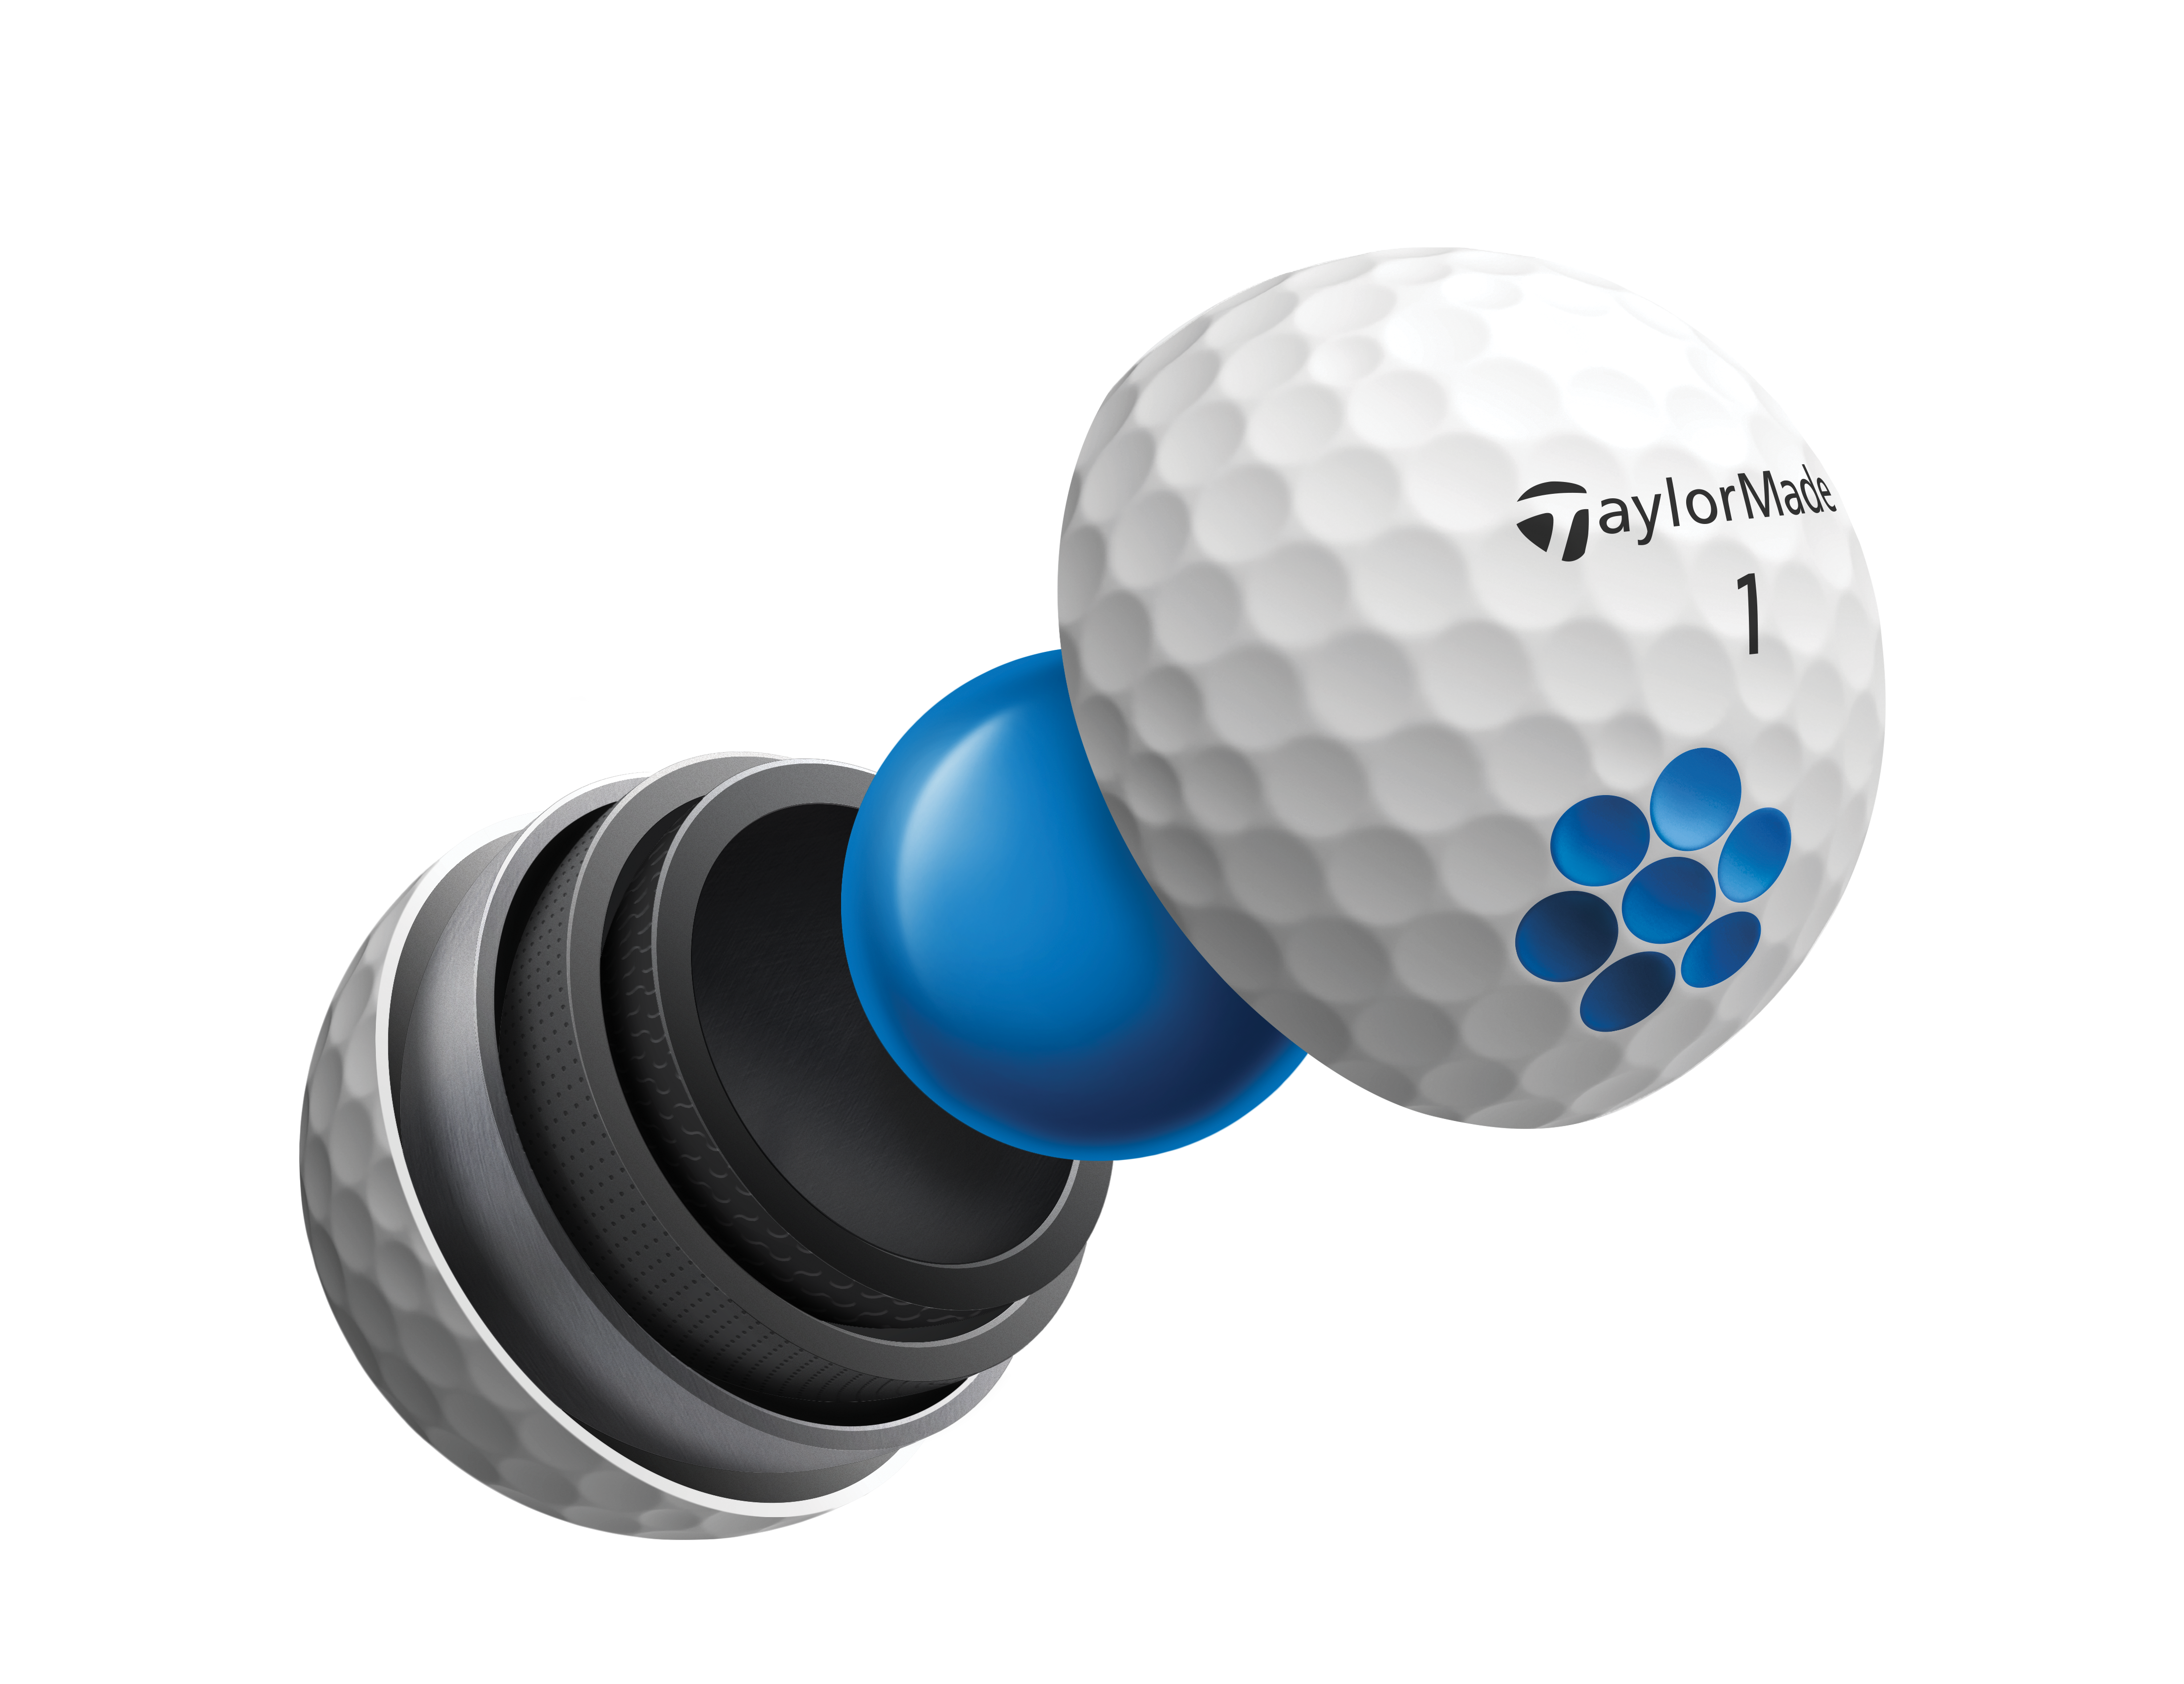 Taylormade TP5 Golf Balls